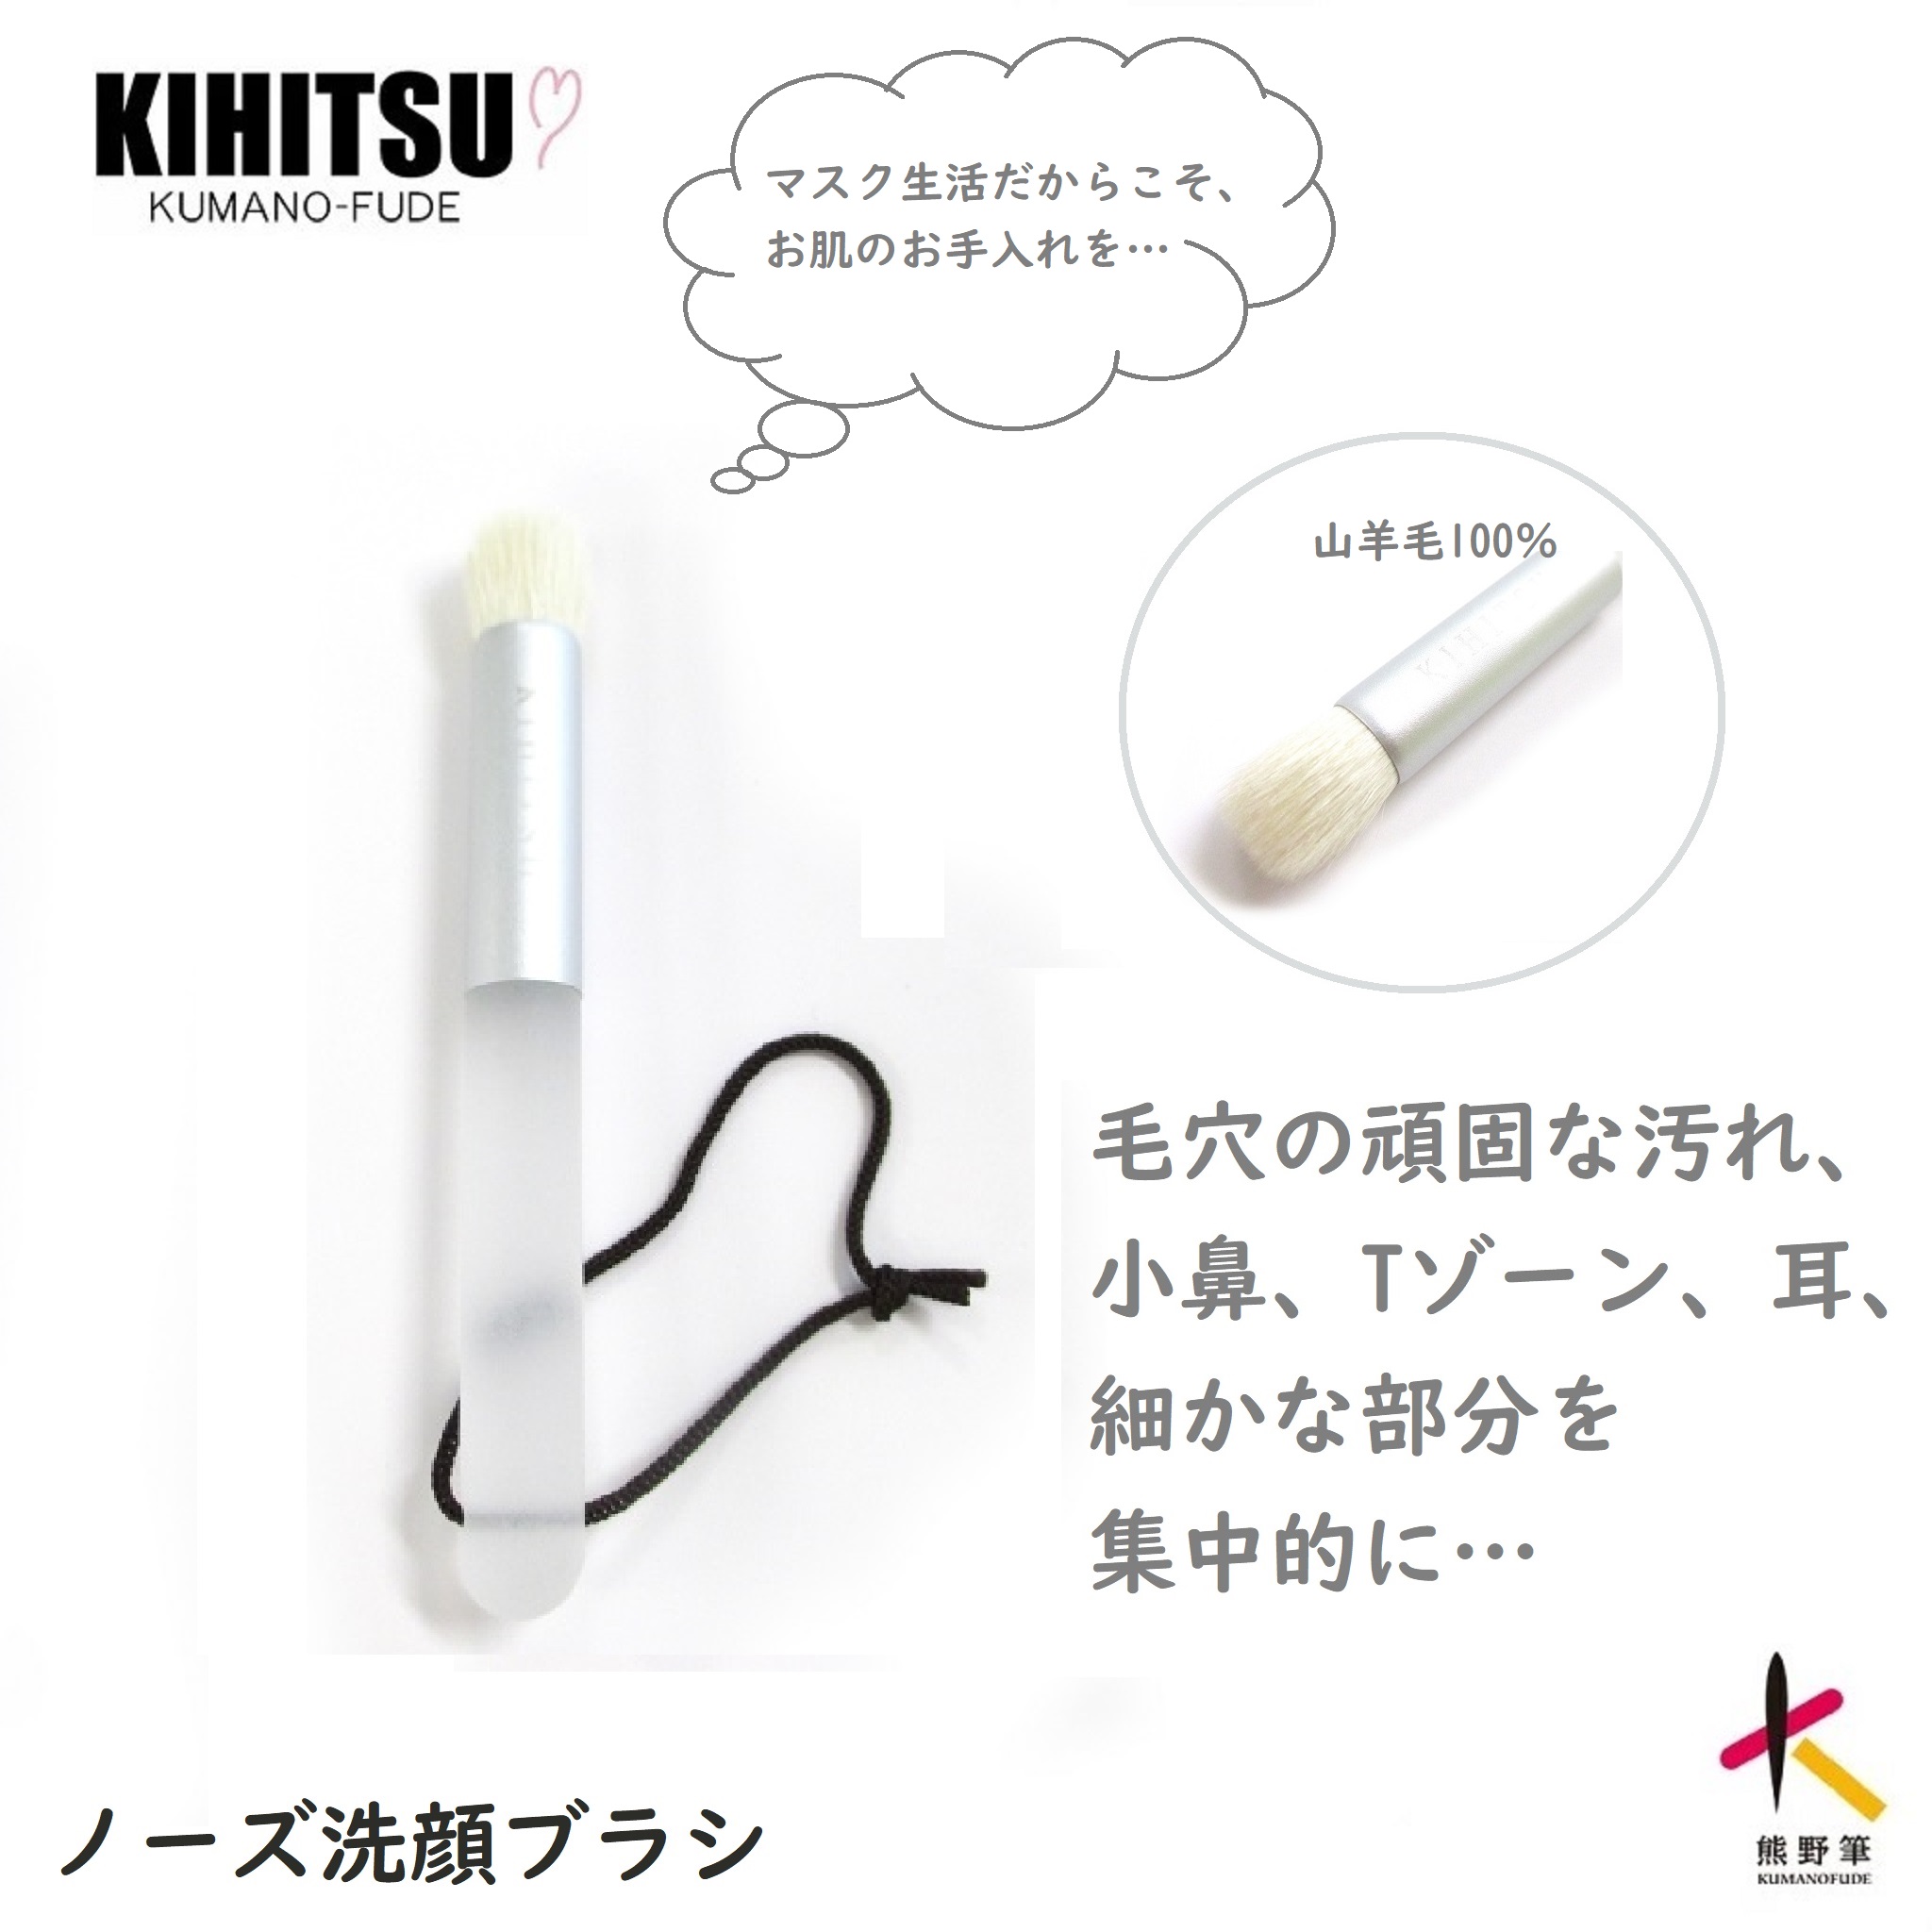 熊野筆 KIHITSU メイクブラシ - 基礎化粧品